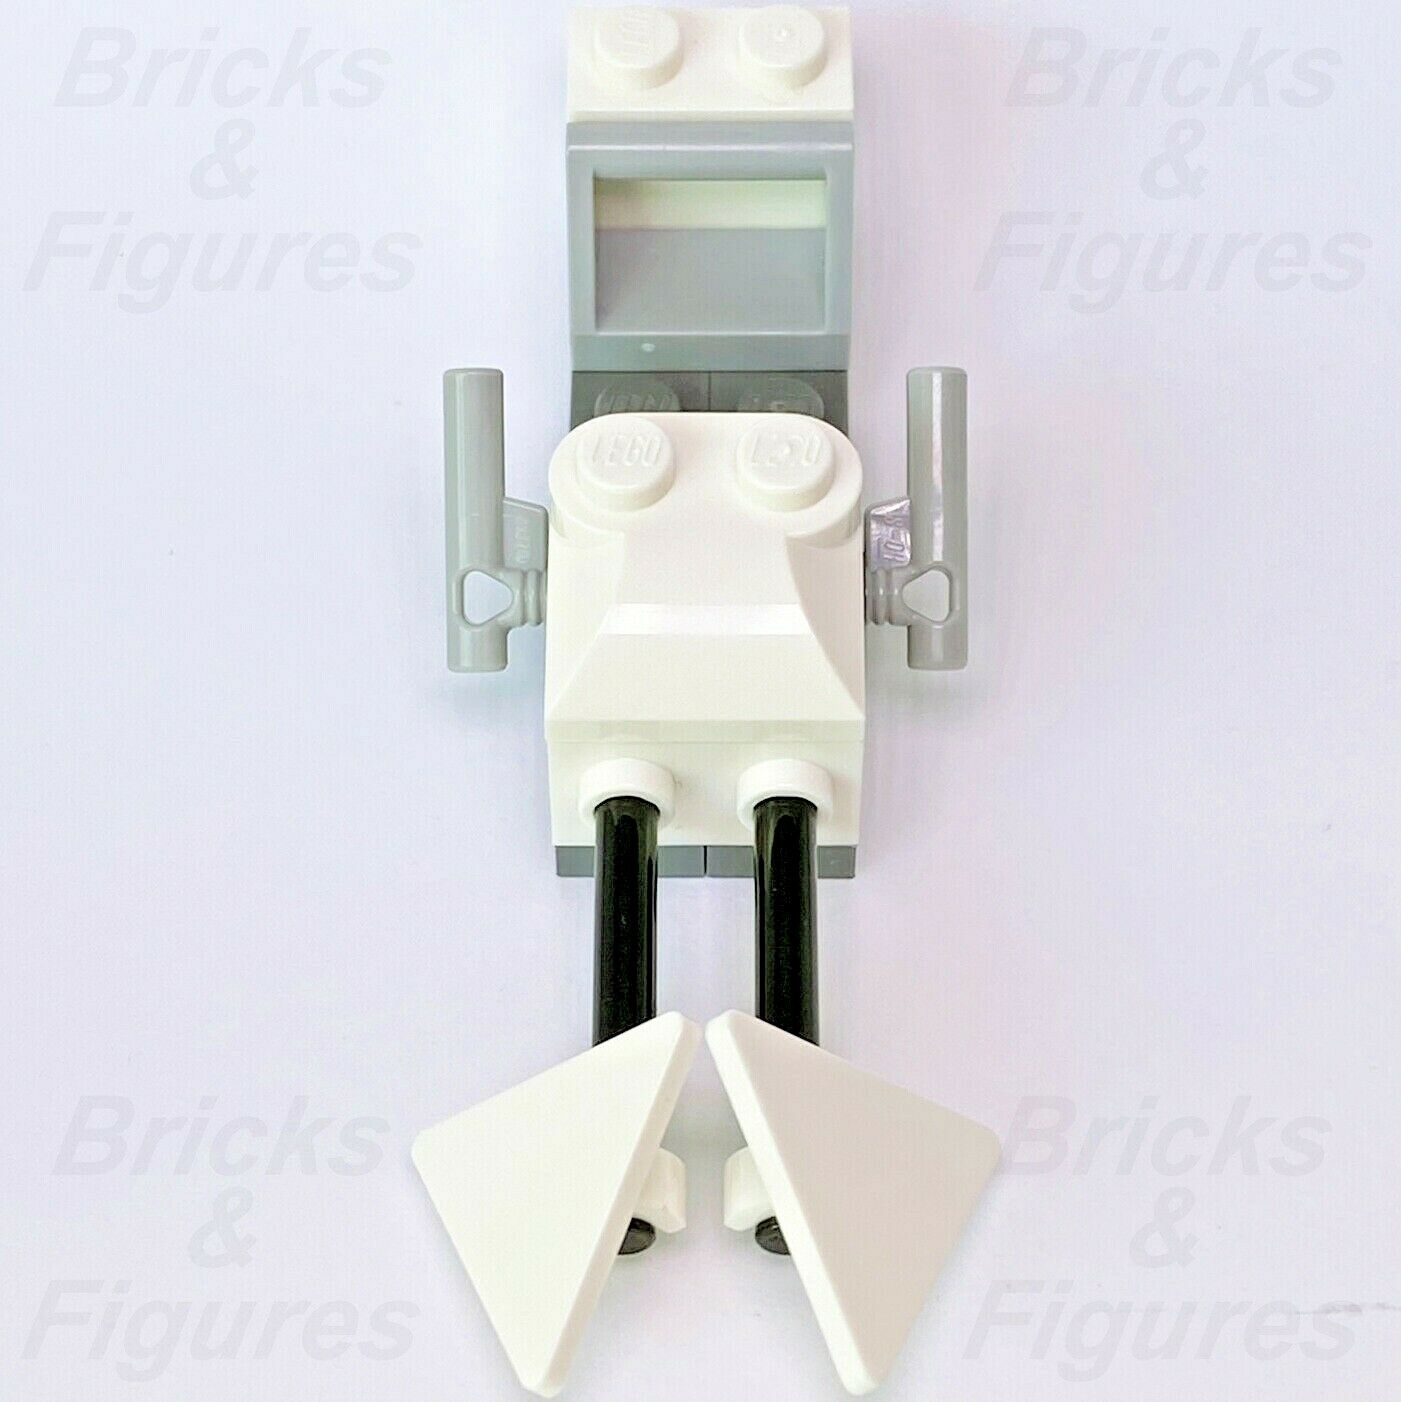 New Star Wars LEGO Speeder Bike Holiday & Event Advent Day 15 Set 75307-16 - Bricks & Figures